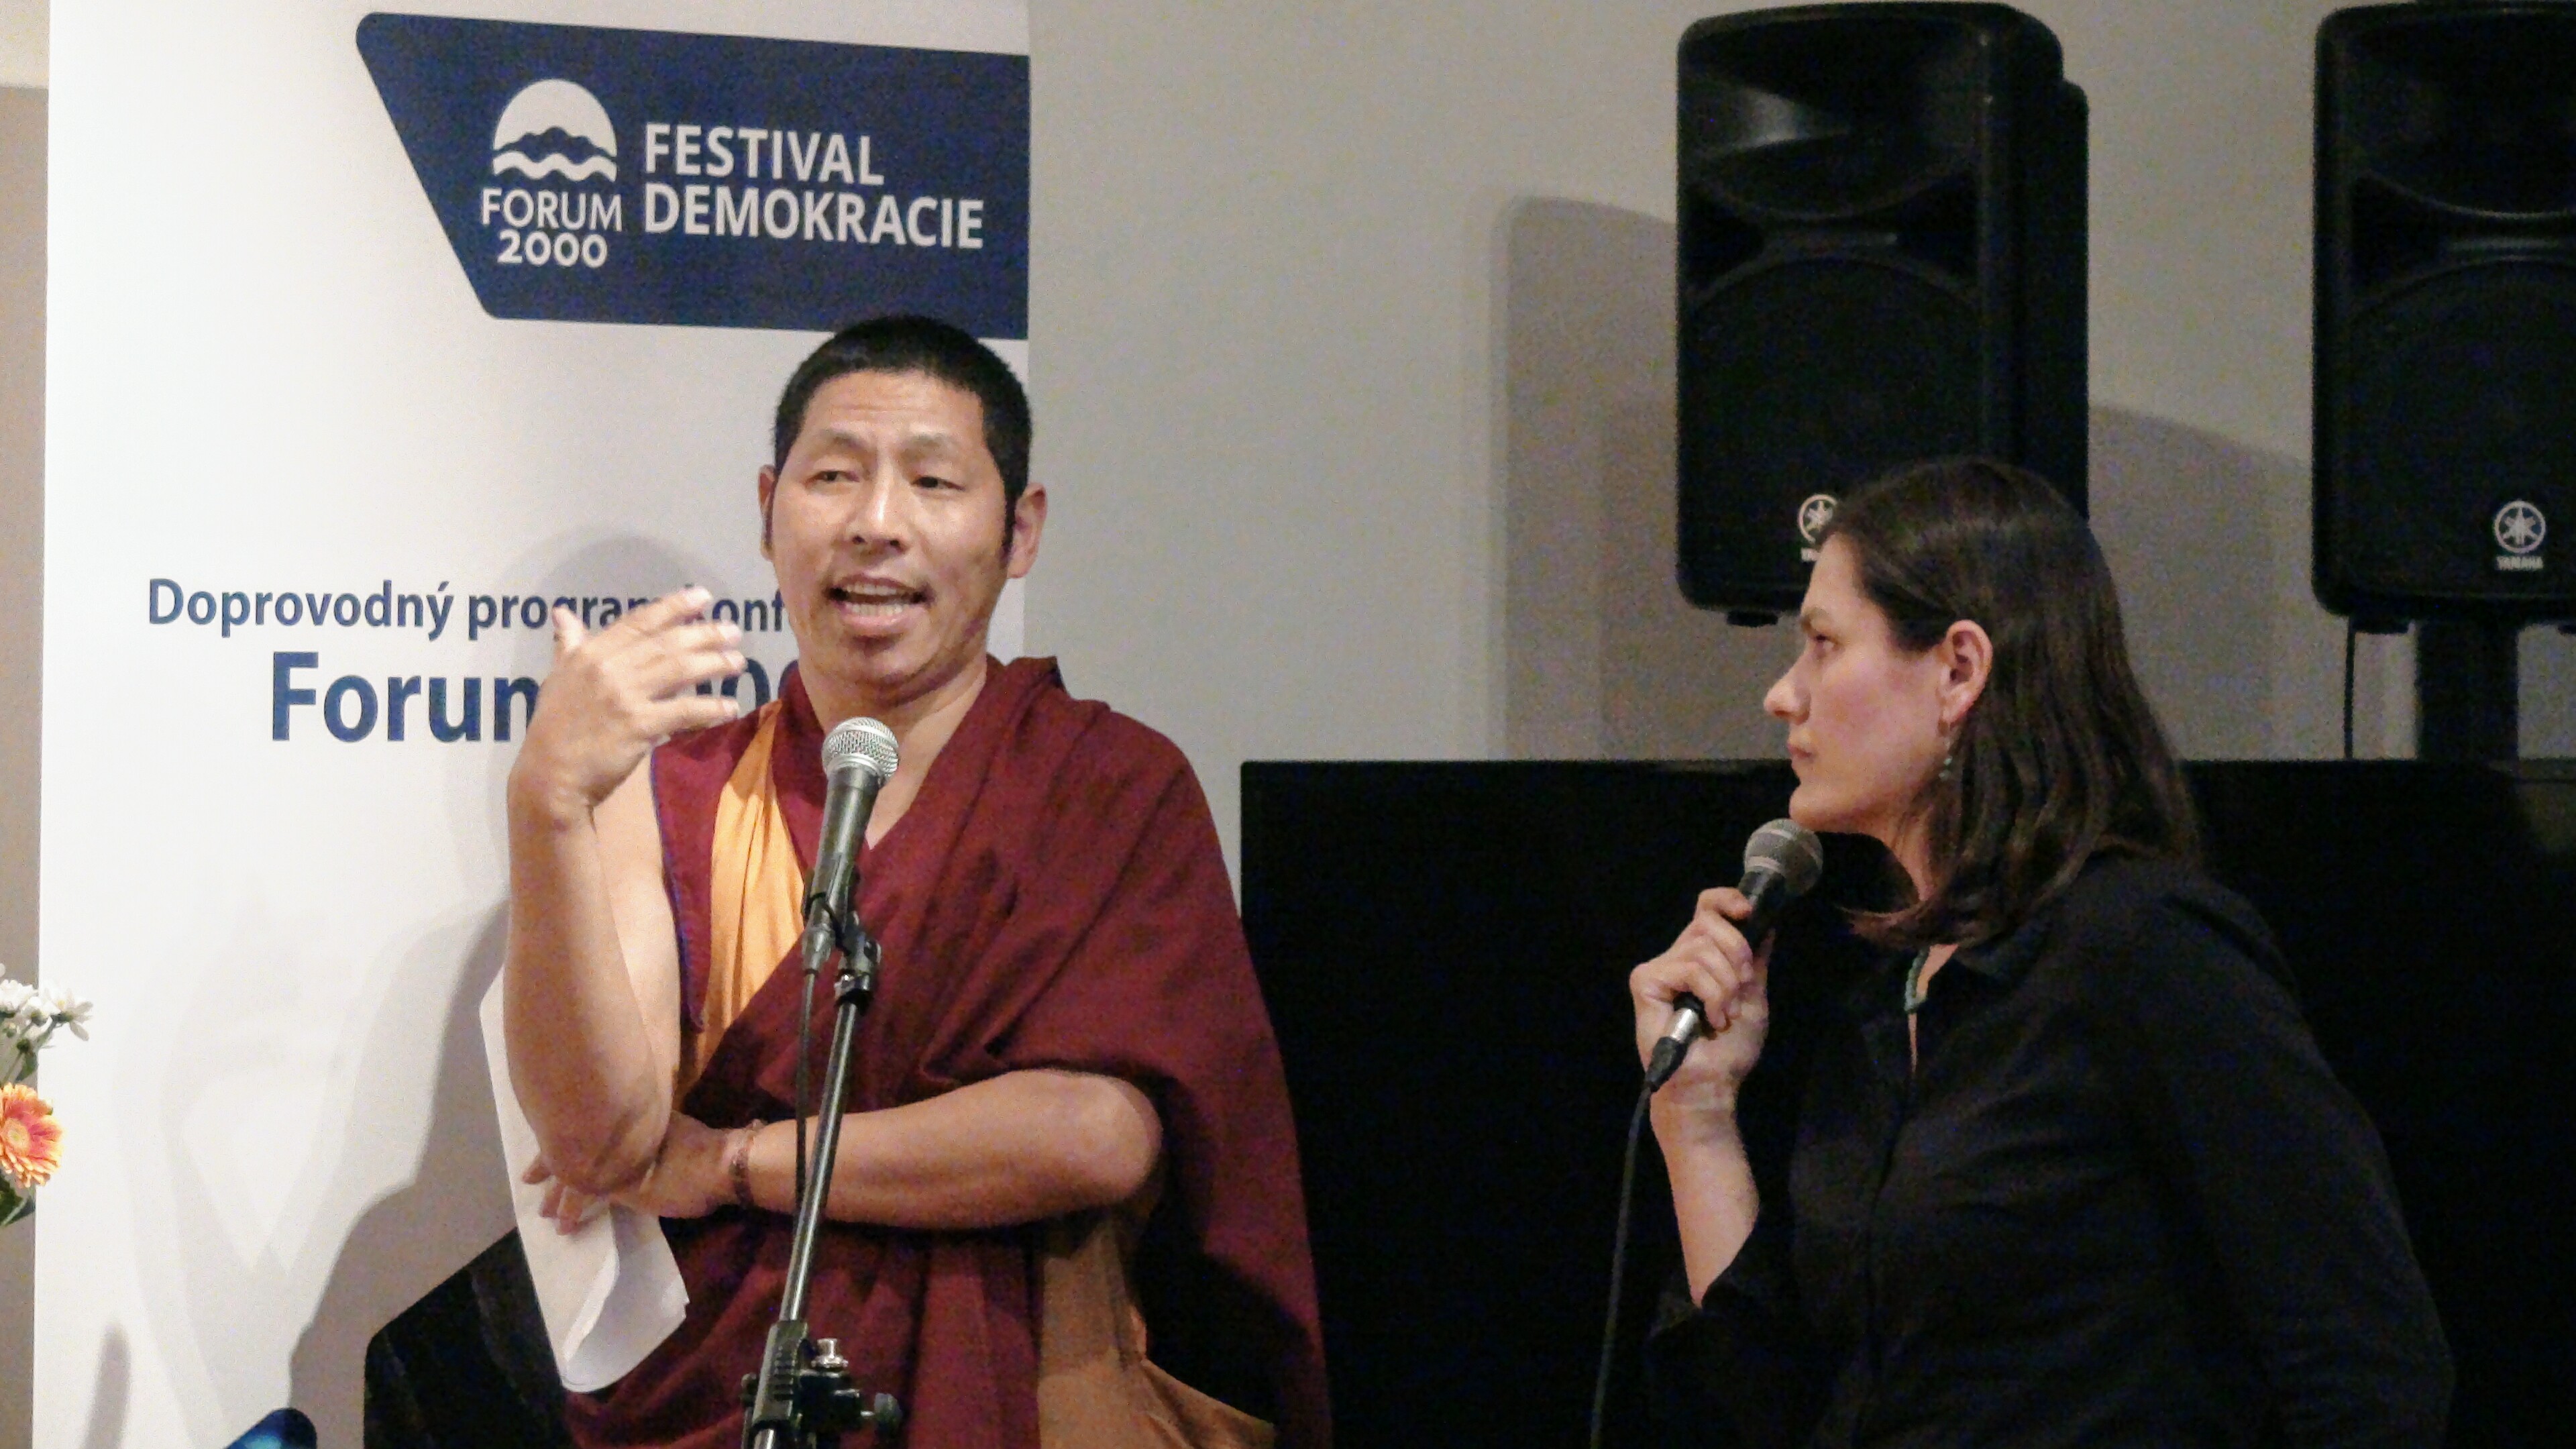 Festival Demokracie – Doprovodný program konference Forum 2000. Foto: Tibet Open House